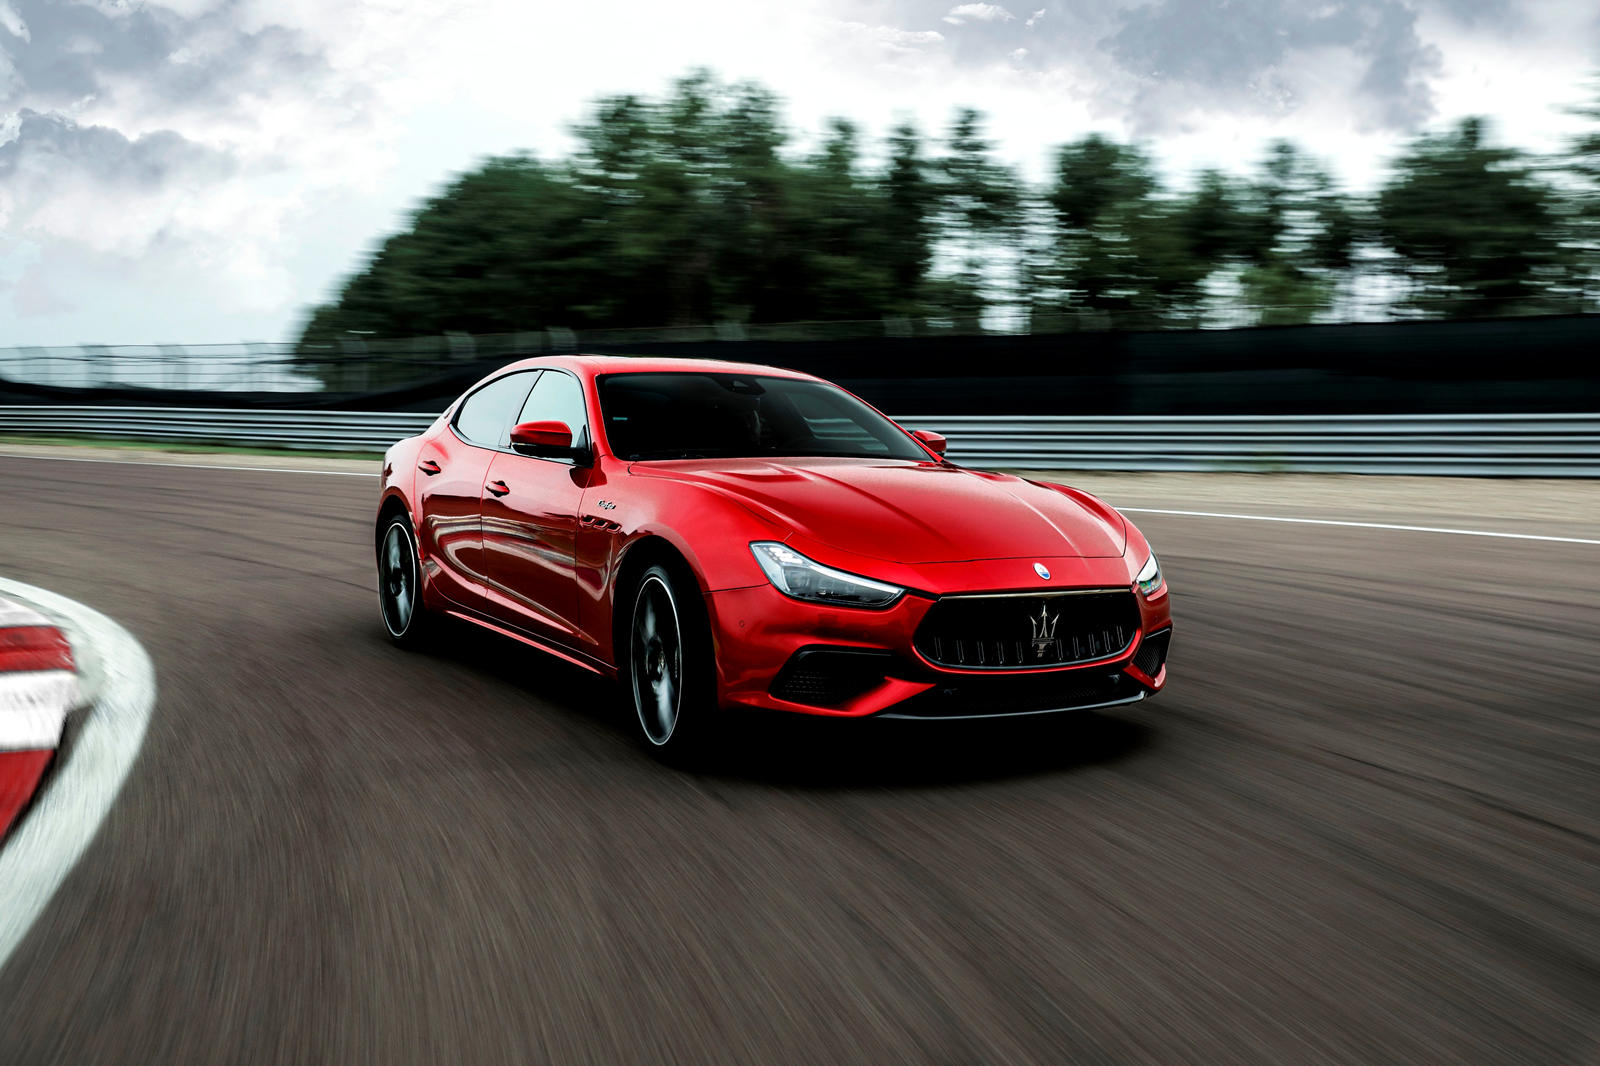 В связи с истечением контракта Maserati с Ferrari новая коллекция Trofeo фактически стала отправной точкой для Maserati с двигателем Ferrari V8. Будущие модели будут оснащаться собственным двигателем Maserati Nettuno V6, способным производить до 620 